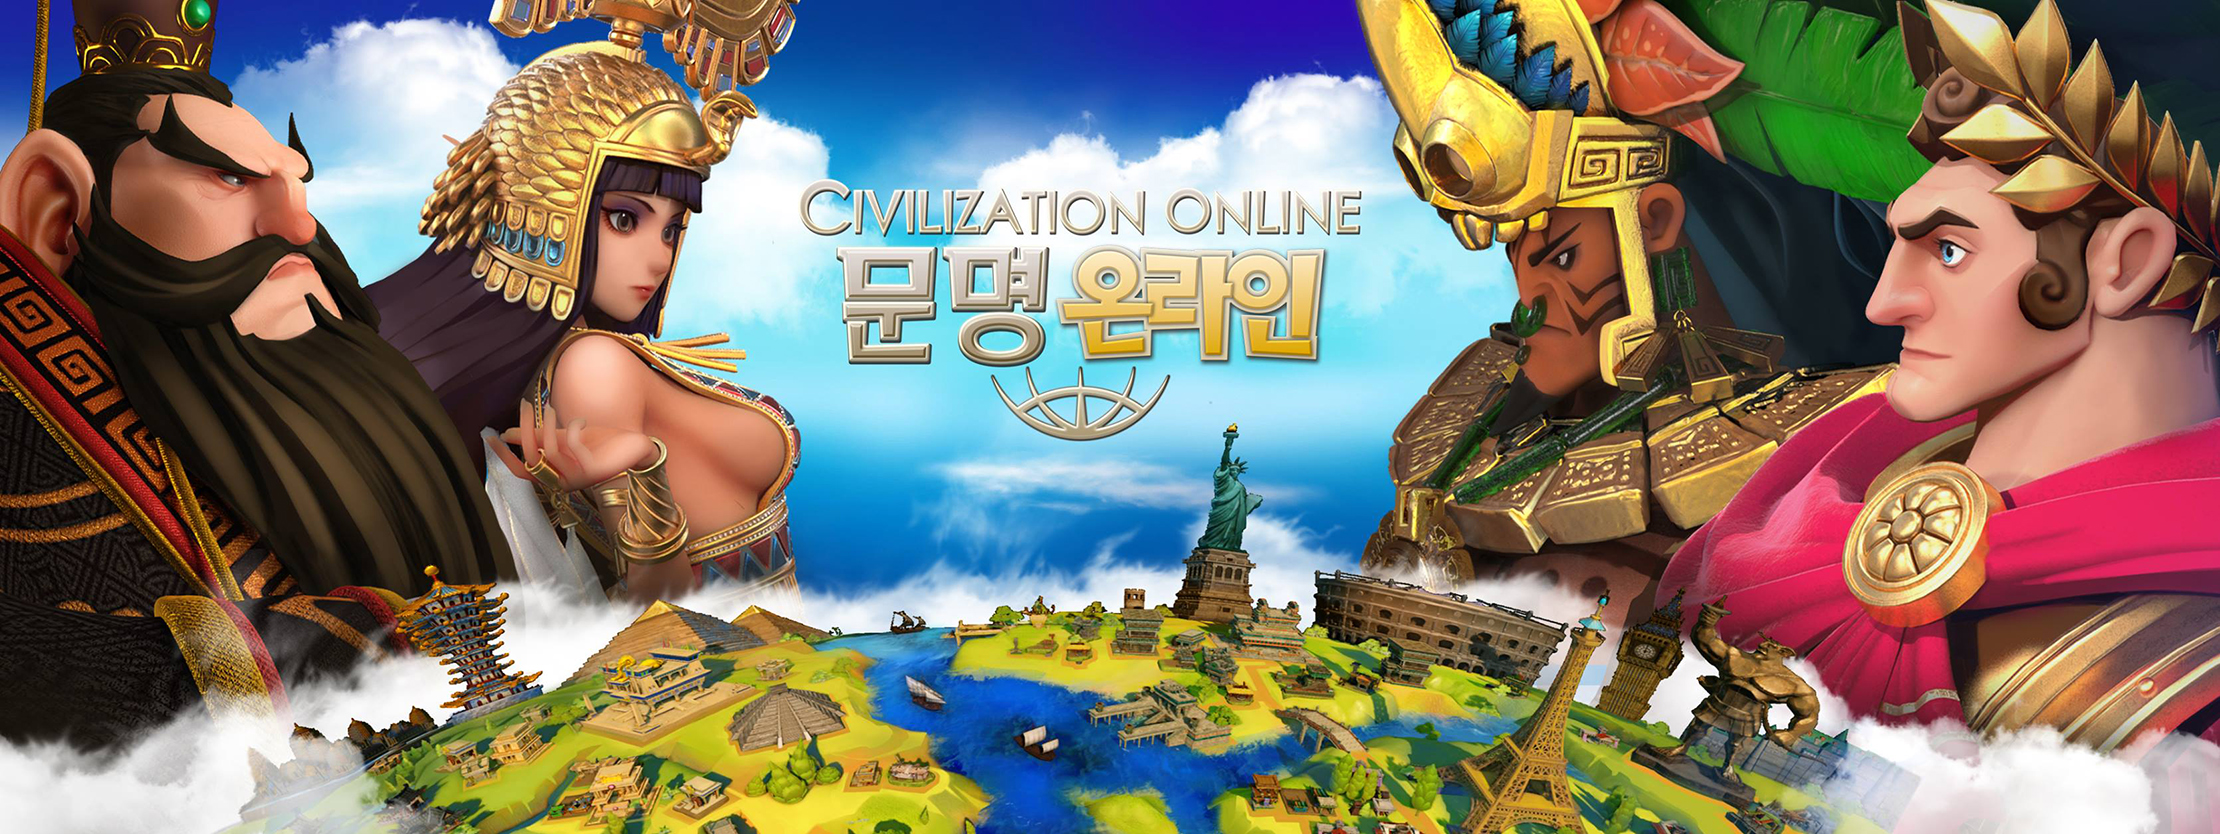 civilization-online header